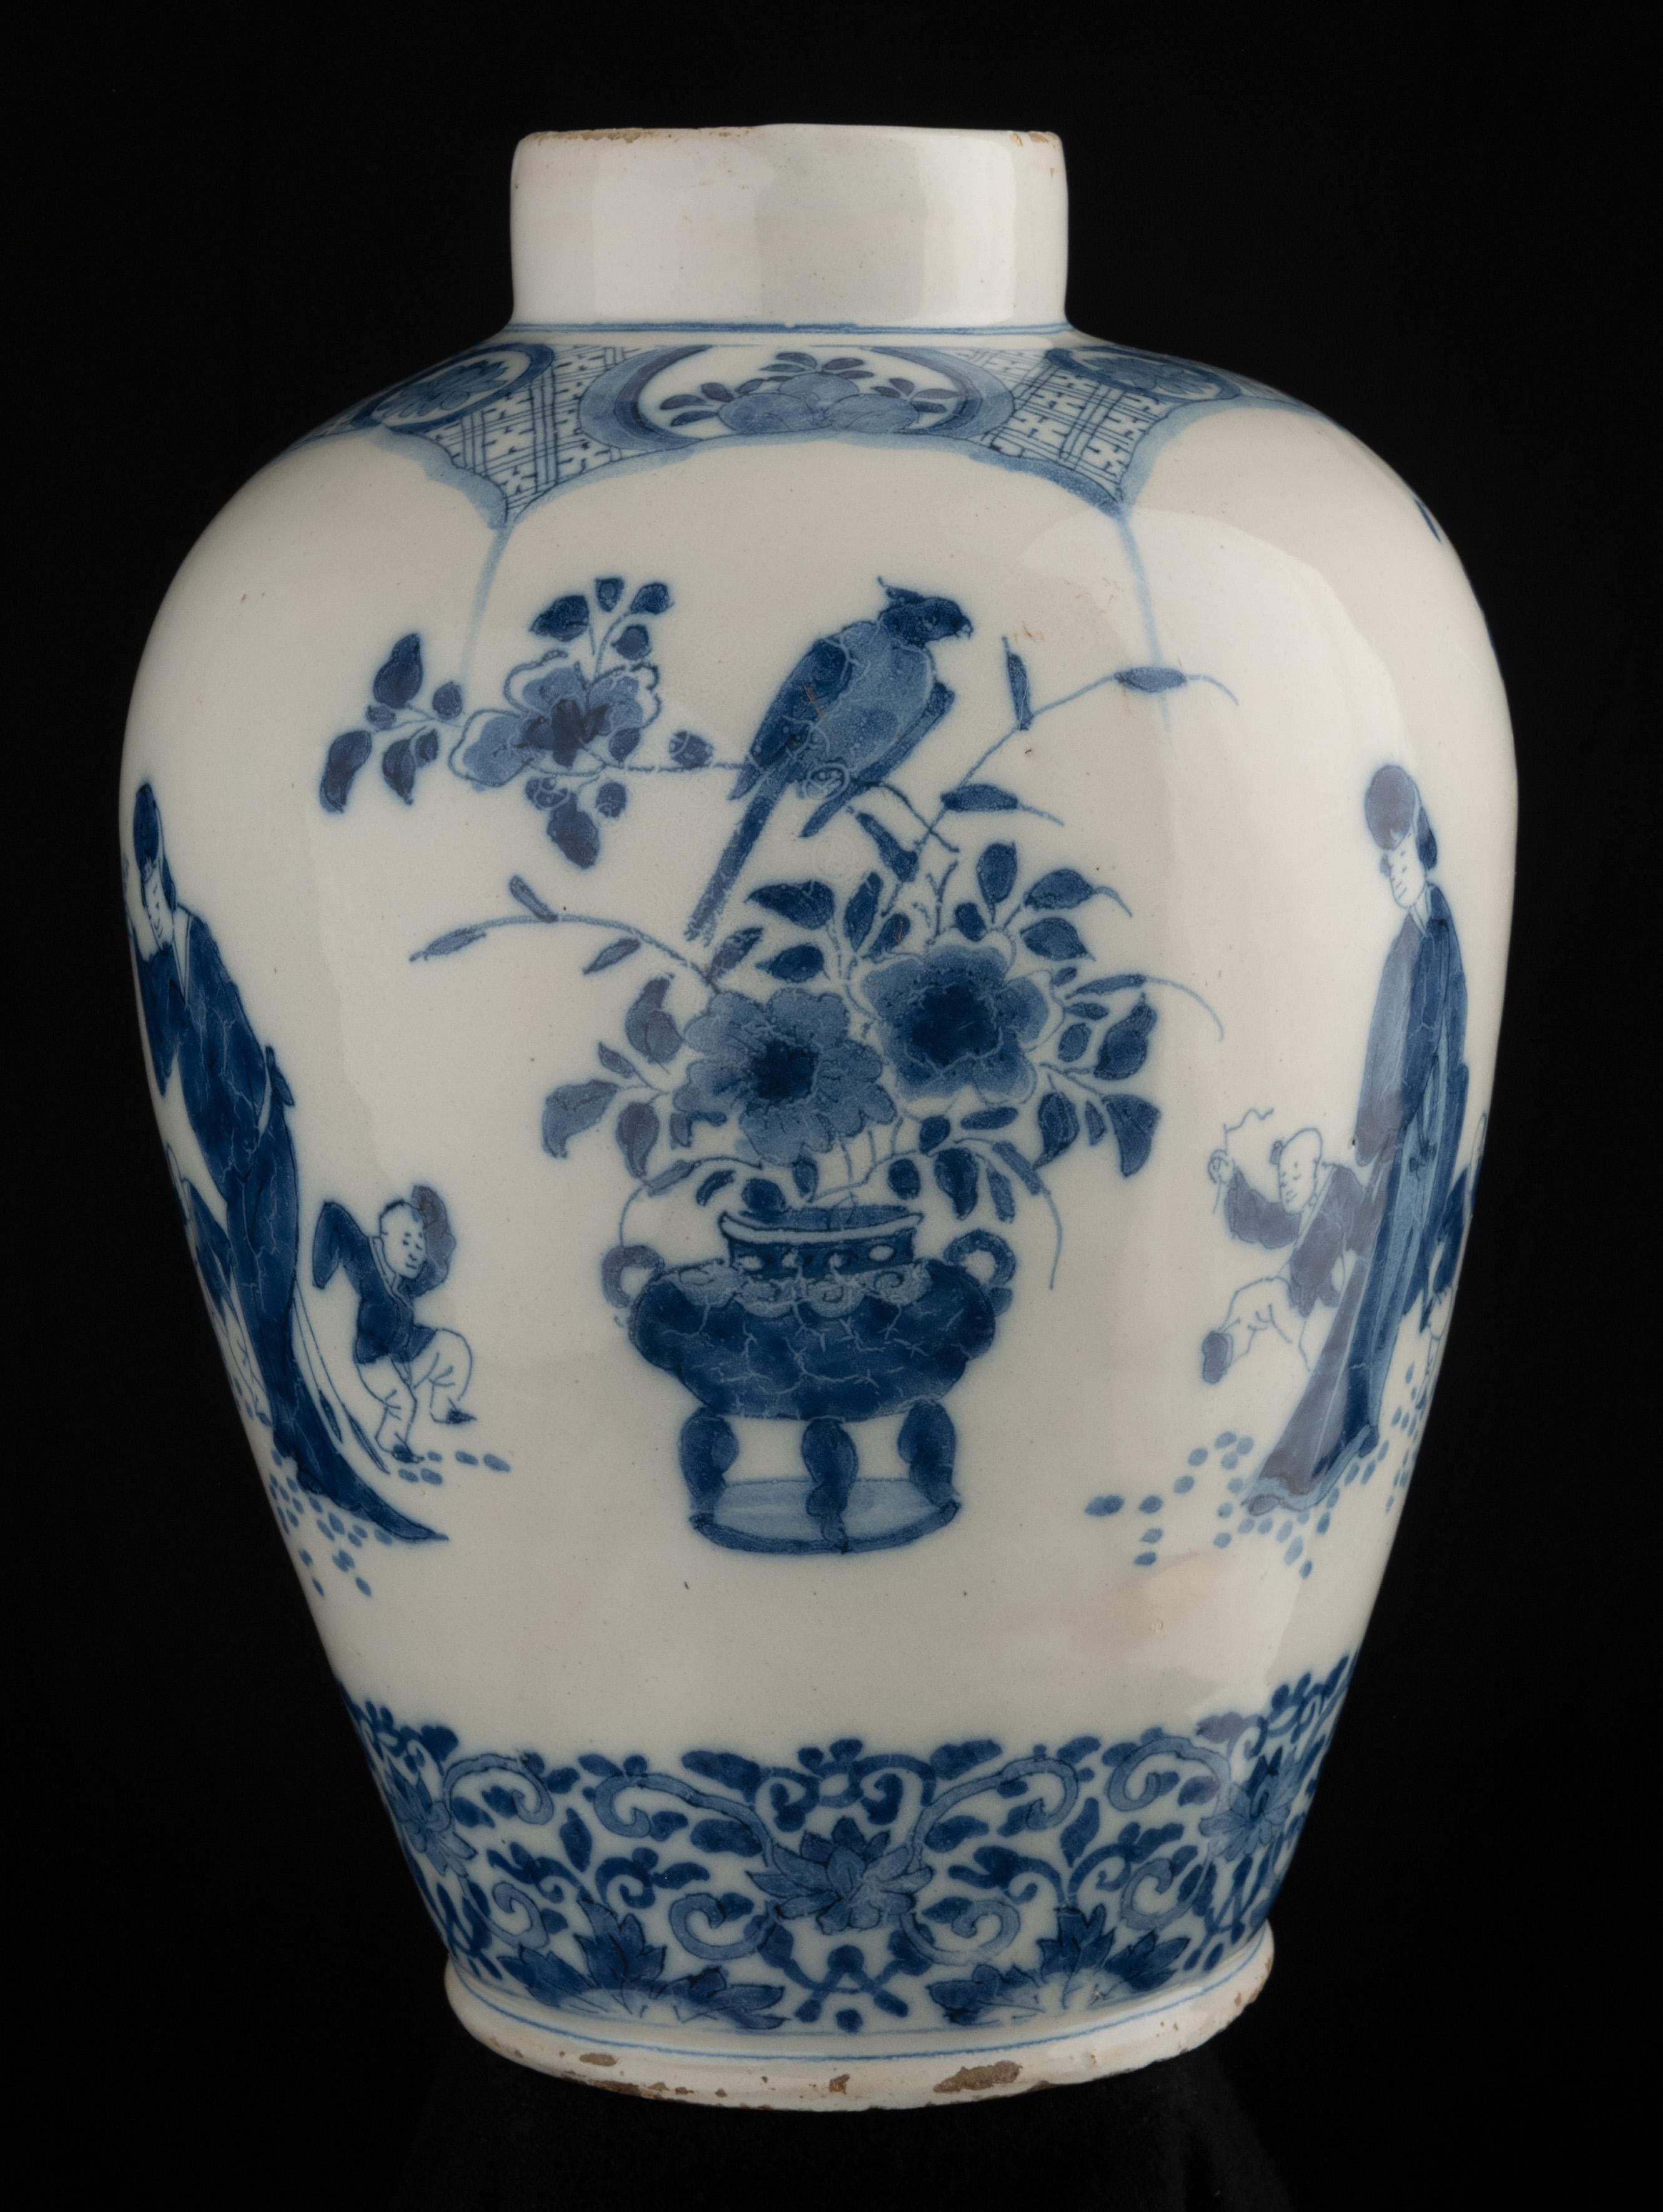 Blaues und weißes Chinoiserie-Glas
Delft, 1700-1720
Der Krug hat einen schmalen, geraden Hals und ist blau mit einem Chinoiserie-Dekor bemalt. Um den Bauch herum sind drei Szenen mit einer chinesischen Frau und zwei tanzenden Kindern zu sehen.